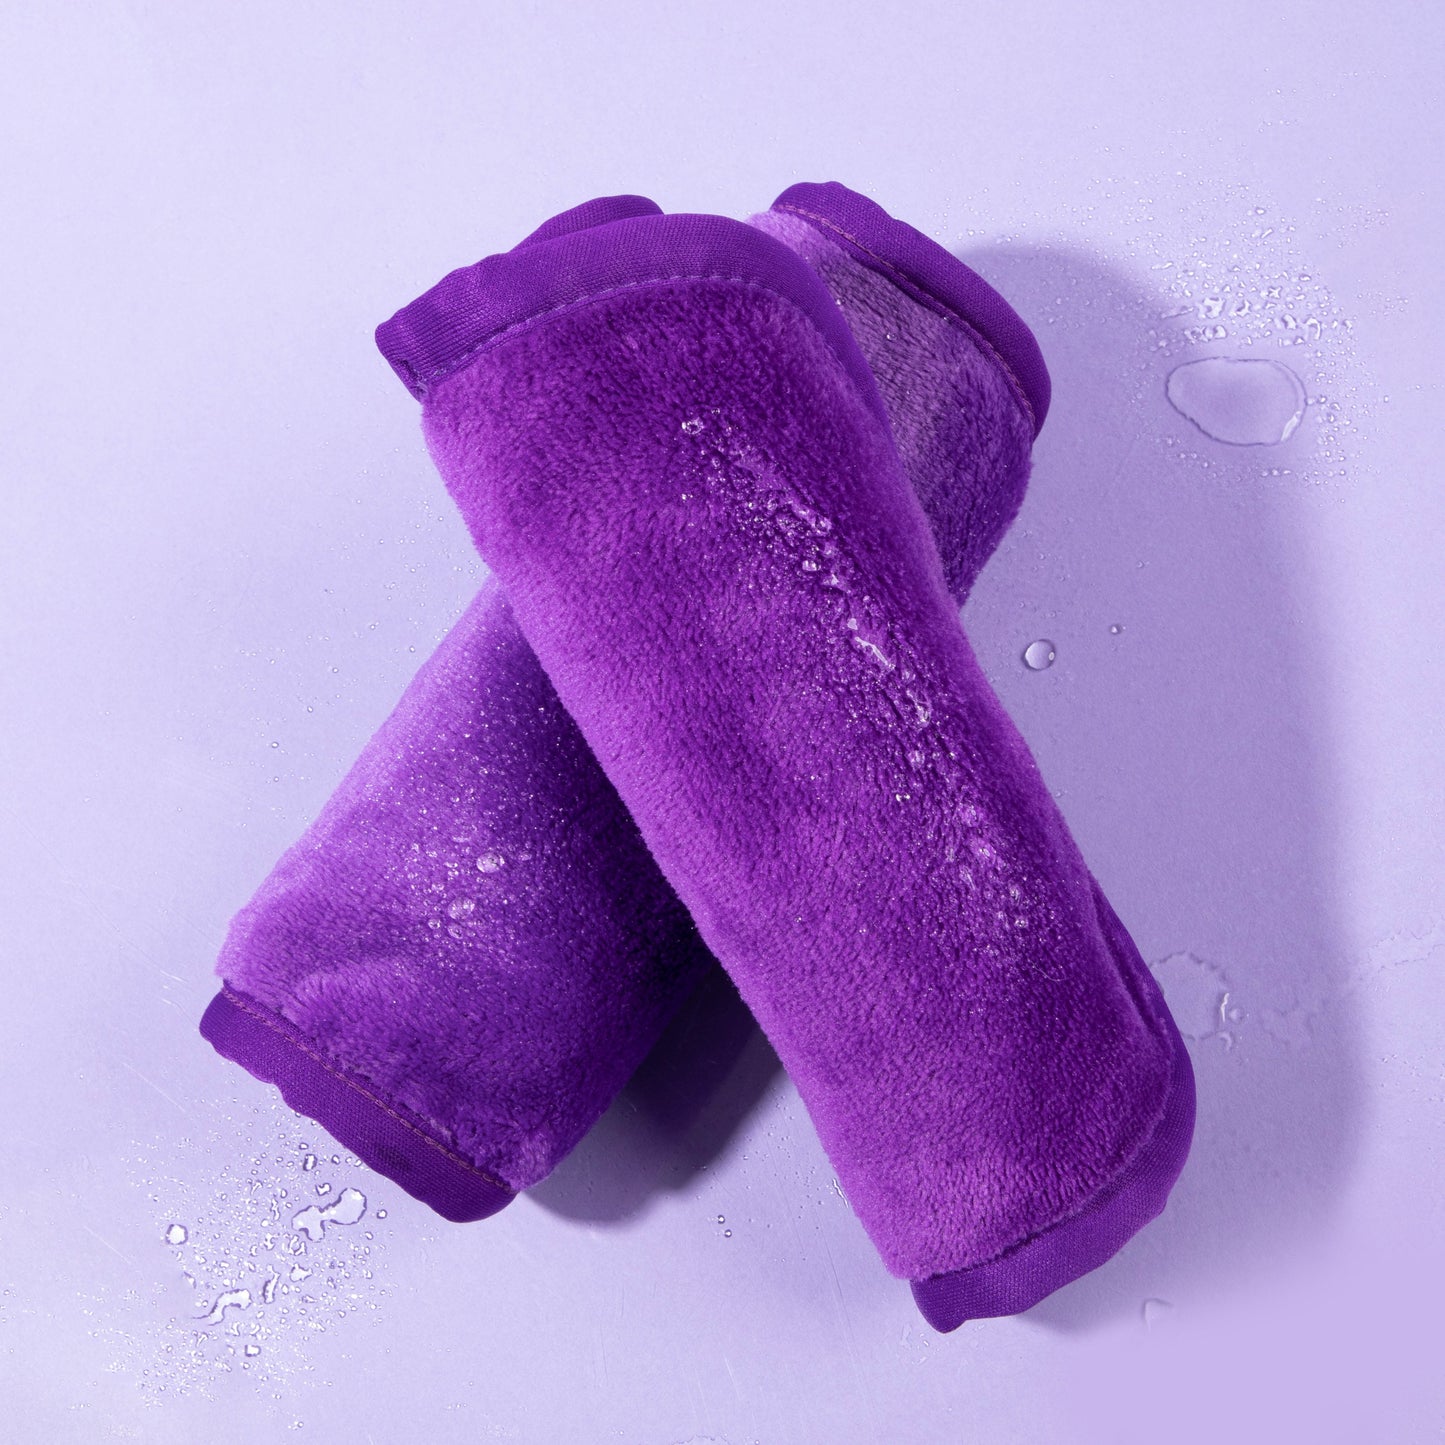 Two Queen Purple Makeup Eraser cloths.